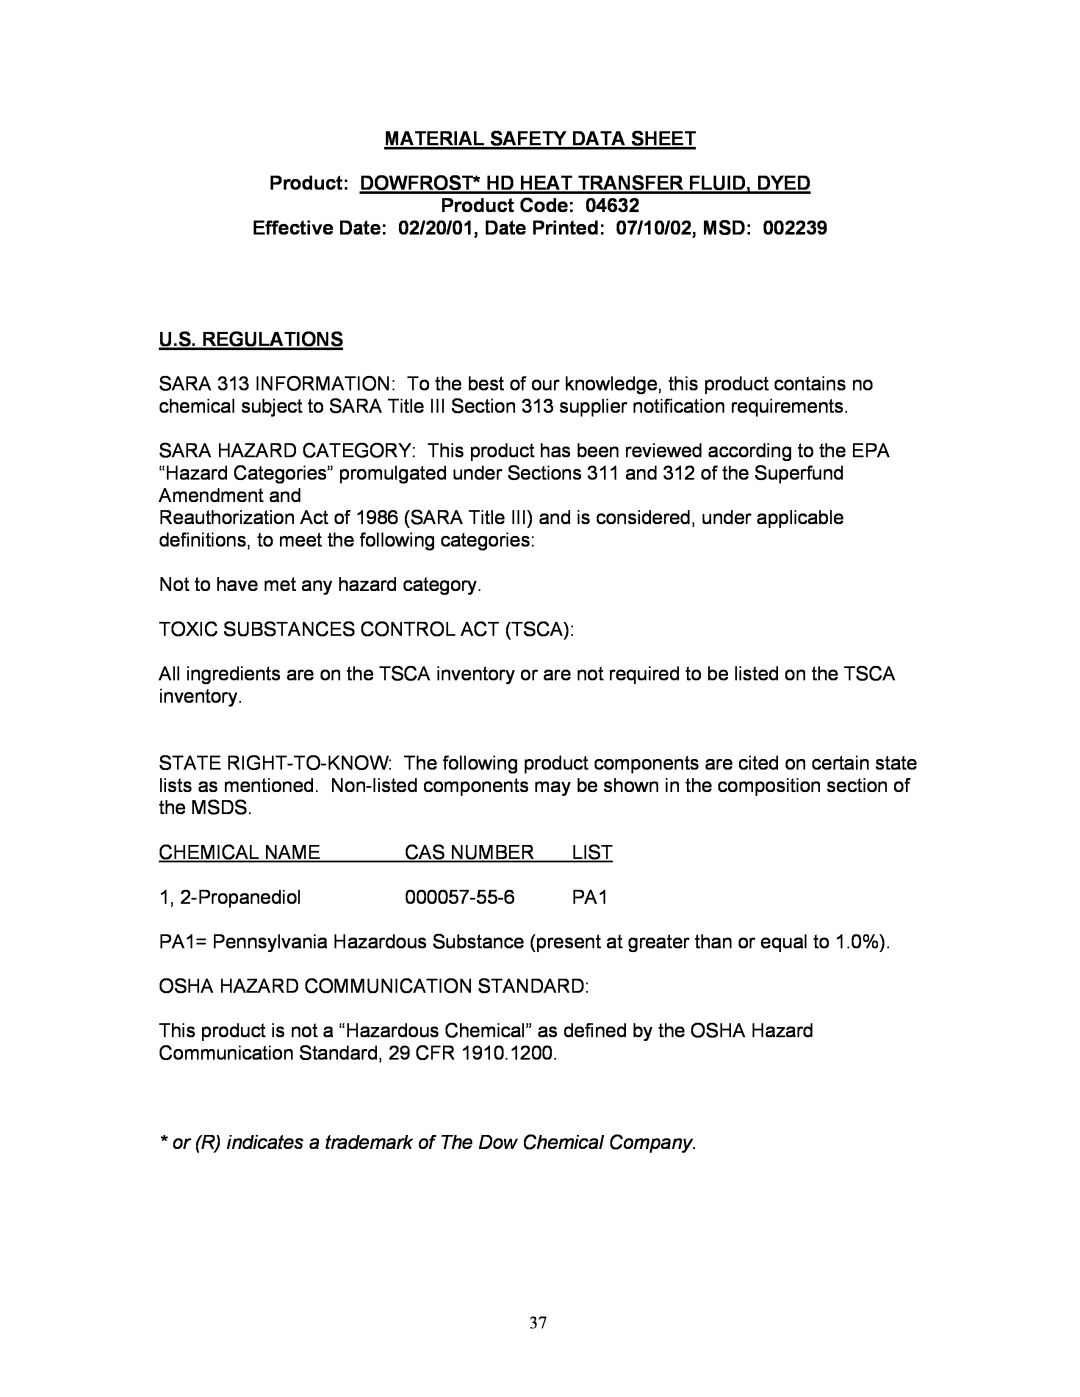 Blodgett KLT-G Series Effective Date 02/20/01, Date Printed 07/10/02, MSD U.S. REGULATIONS, Material Safety Data Sheet 